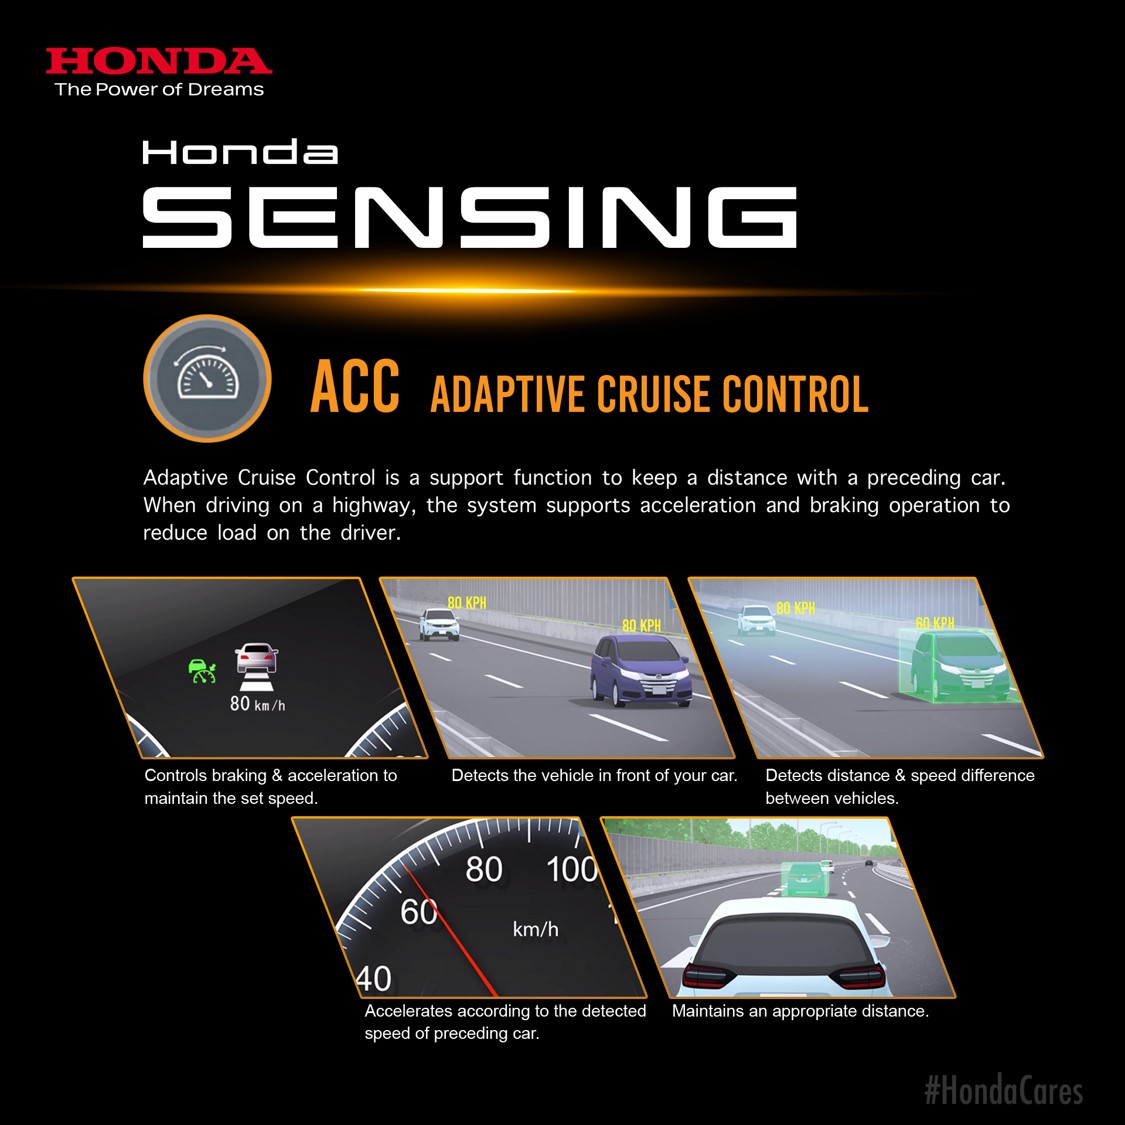 Honda Sensing